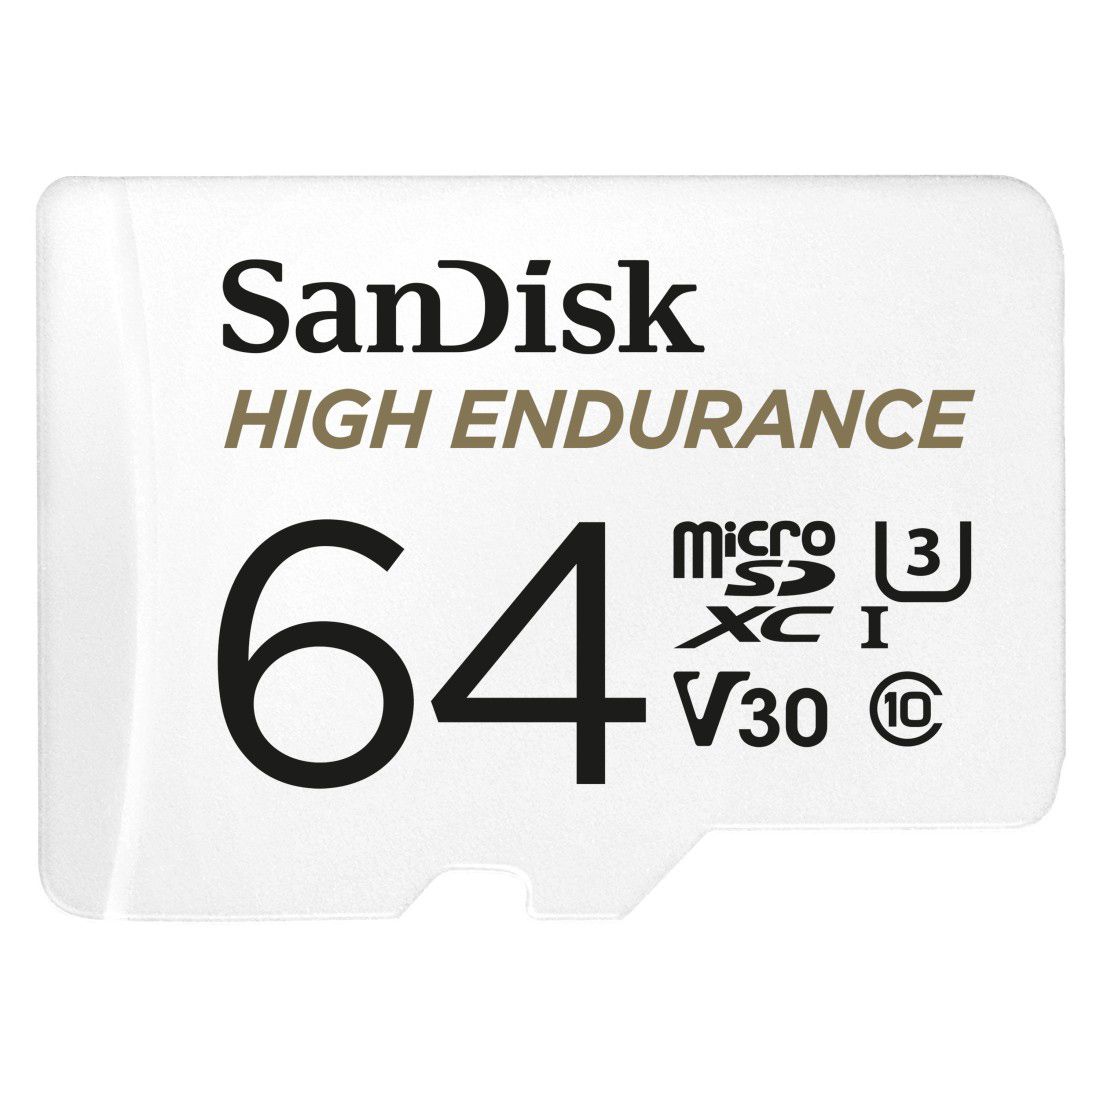 SanDisk microSDXC™ 64GB memóriakártya, High Endurance (olvasási sebesség: 100 MB/s, írási sebesség: 40 MB/s) V30, A2, C10, U3, Full HD, 4K